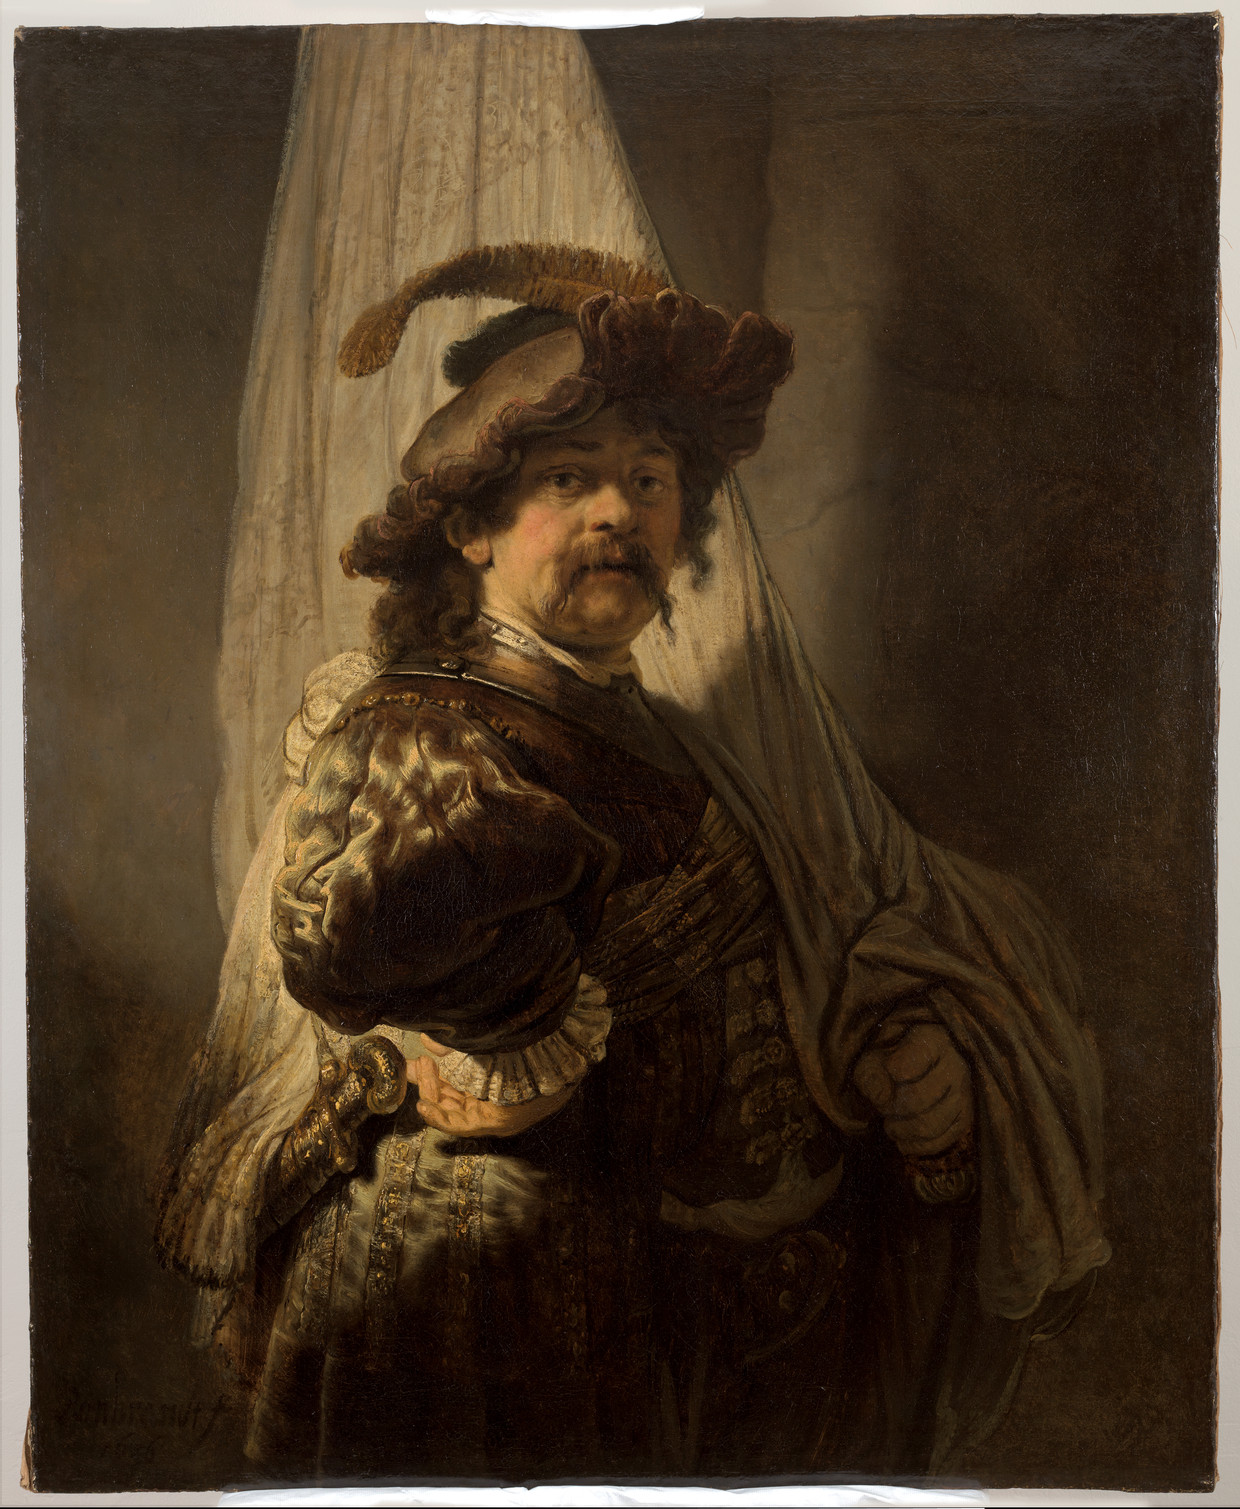 The Standard Bearer, Rembrandt 